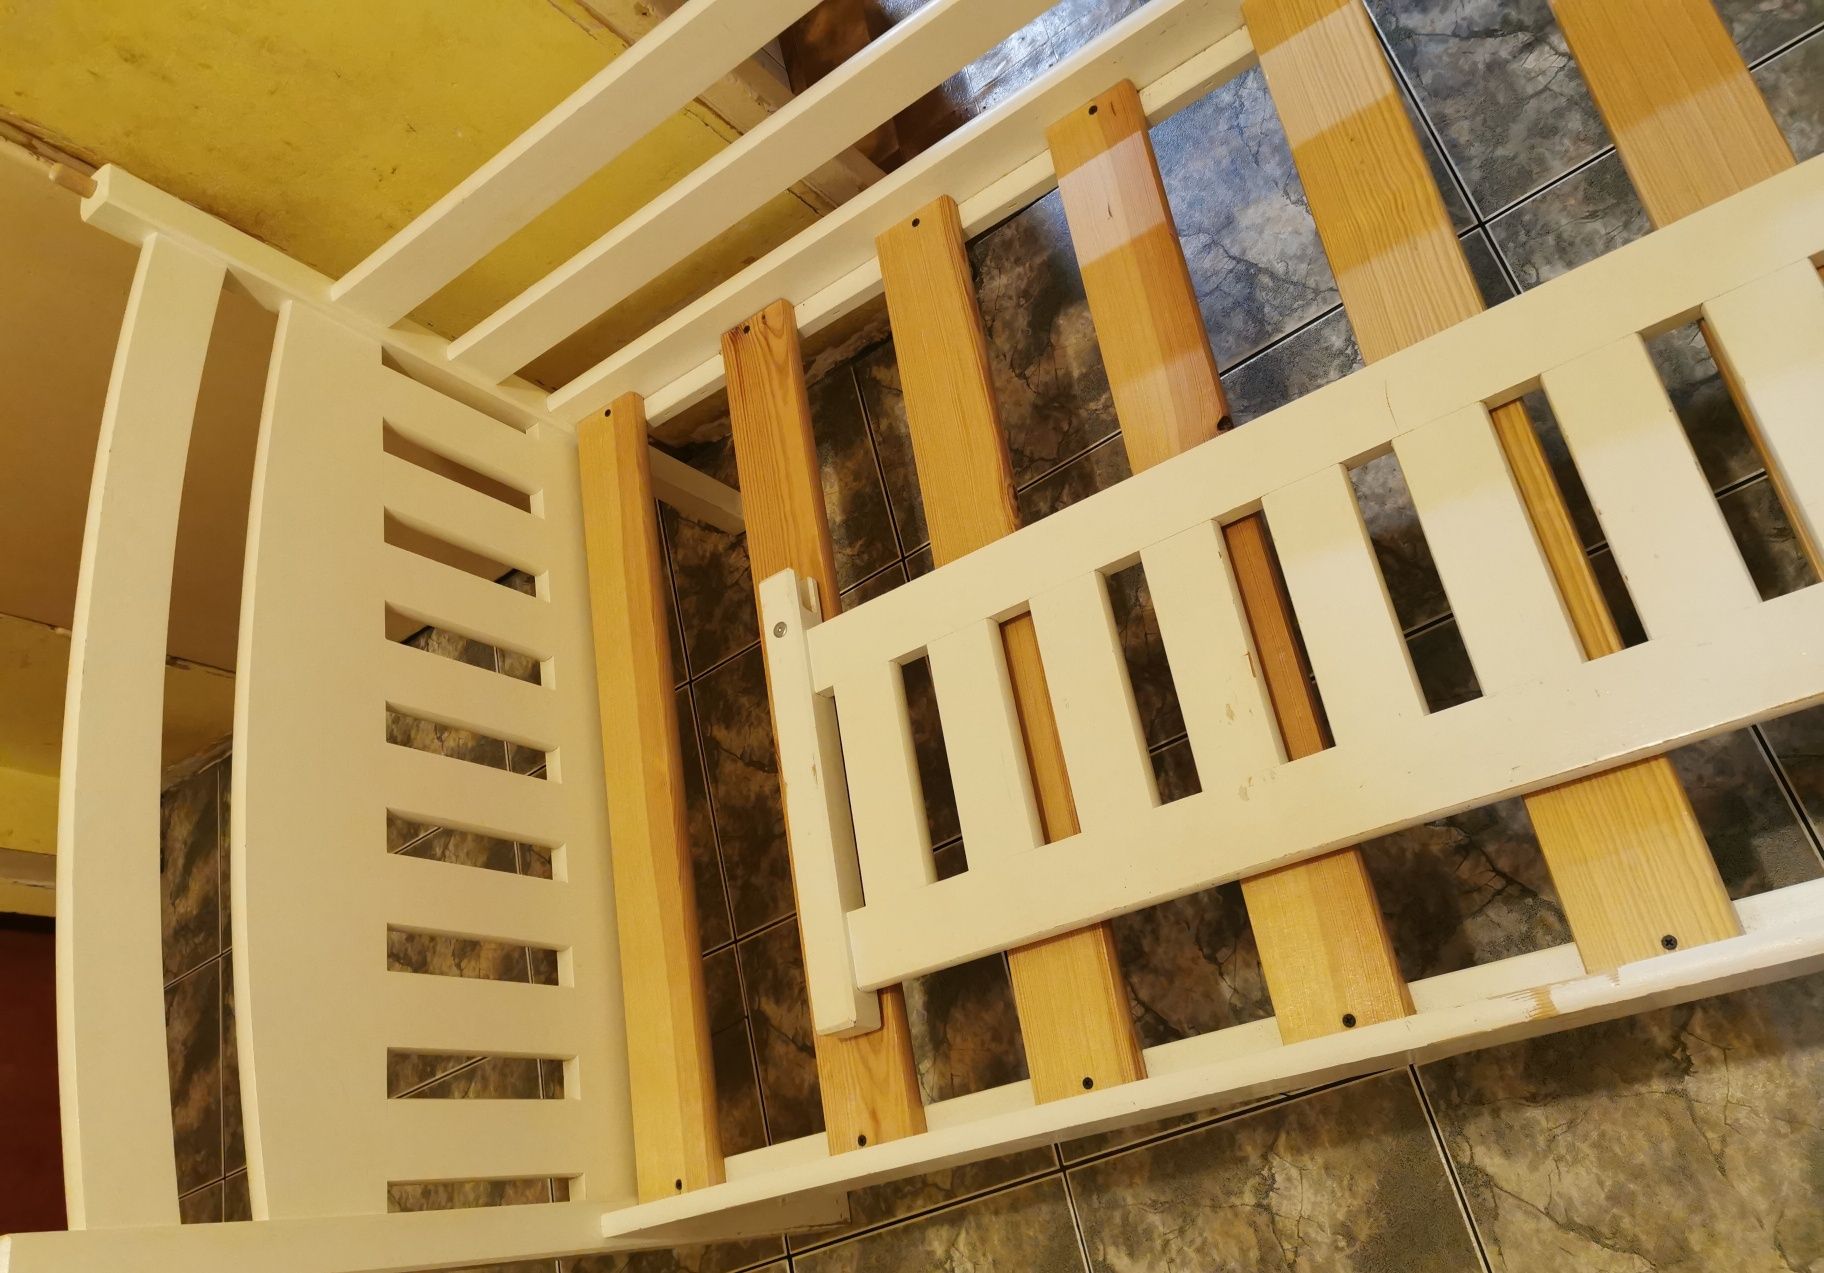 Łóżko drewniane 80x180 pojedyńcze jednoosobowe białe skrzynia barierka